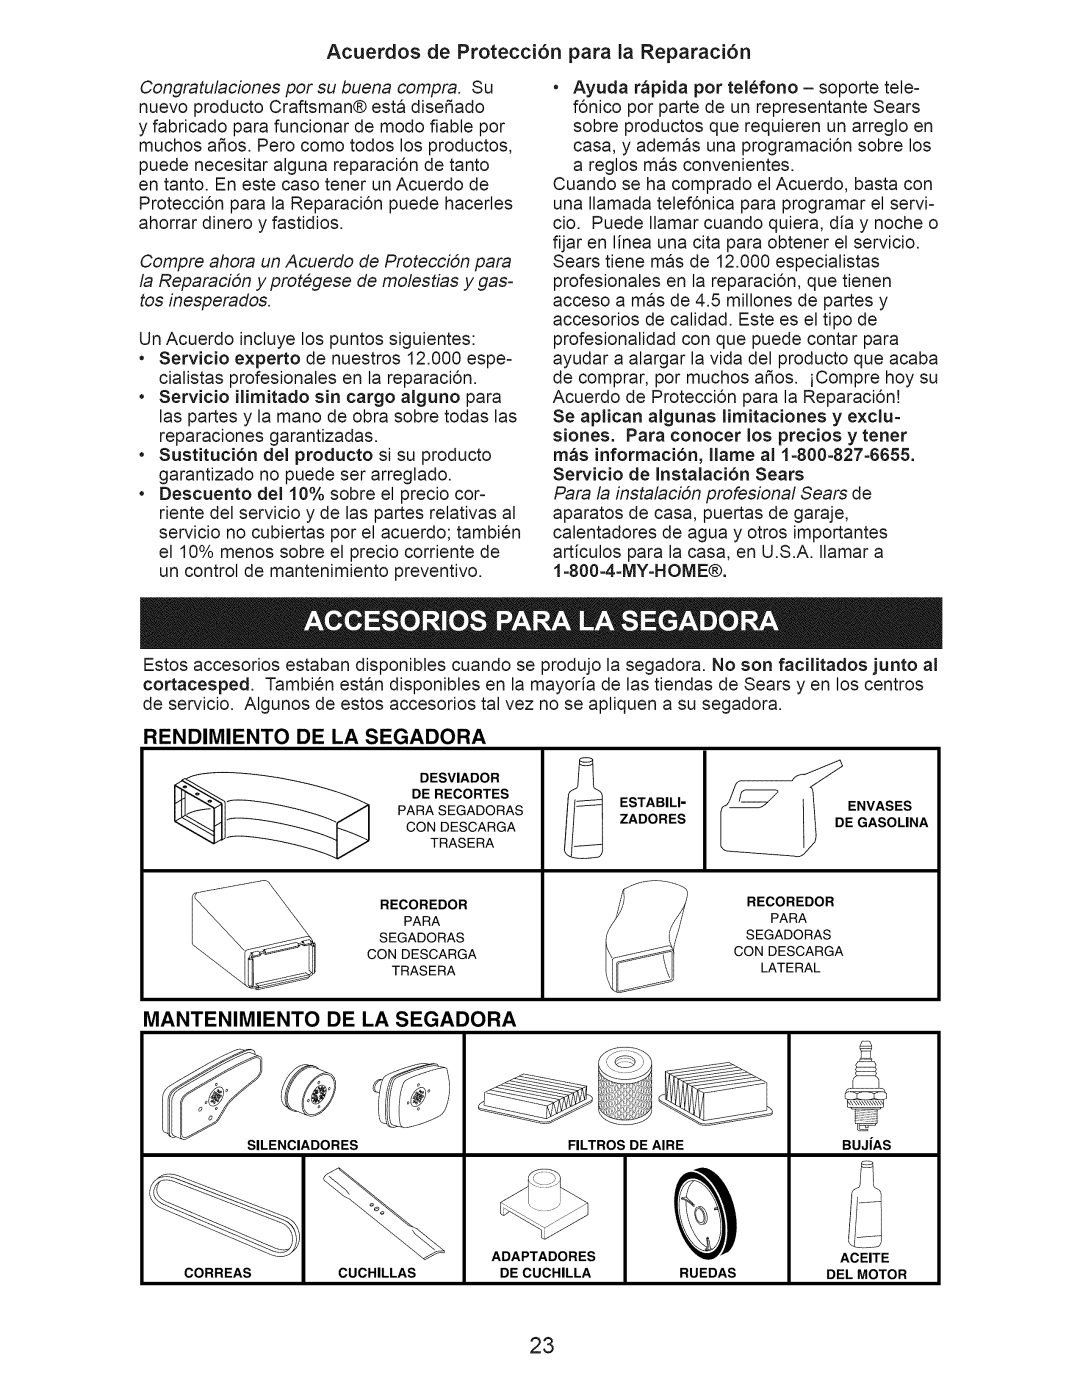 Craftsman 917.374941 manual Rendimiento, De La Segadora, Mantenimiento, Servicio de Instalaci6n Sears 